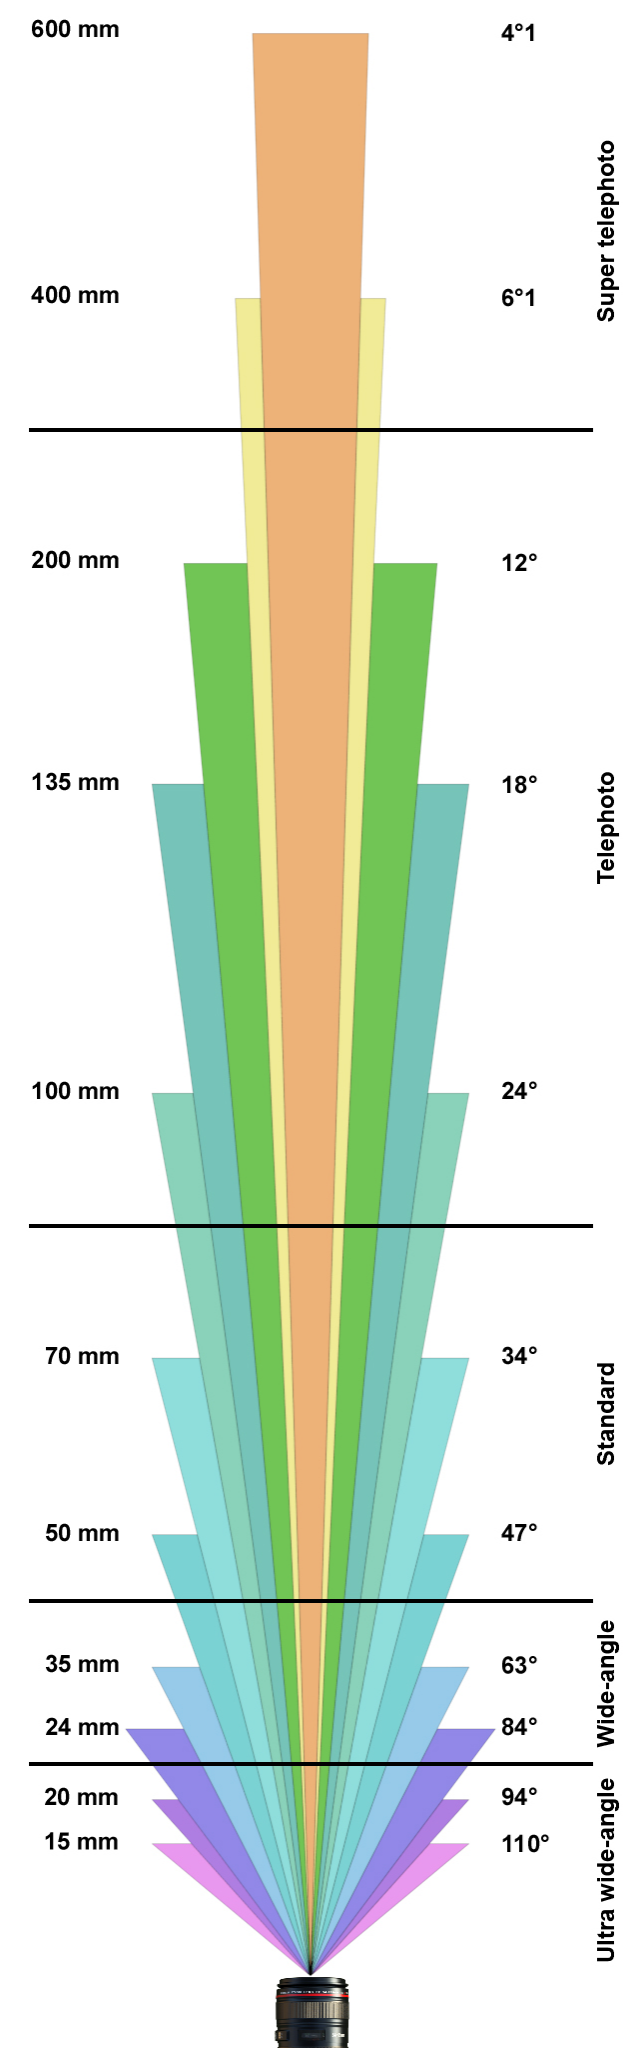 фокусное расстояние в сравнении с диагональным углом обзора (для full frame камеры)